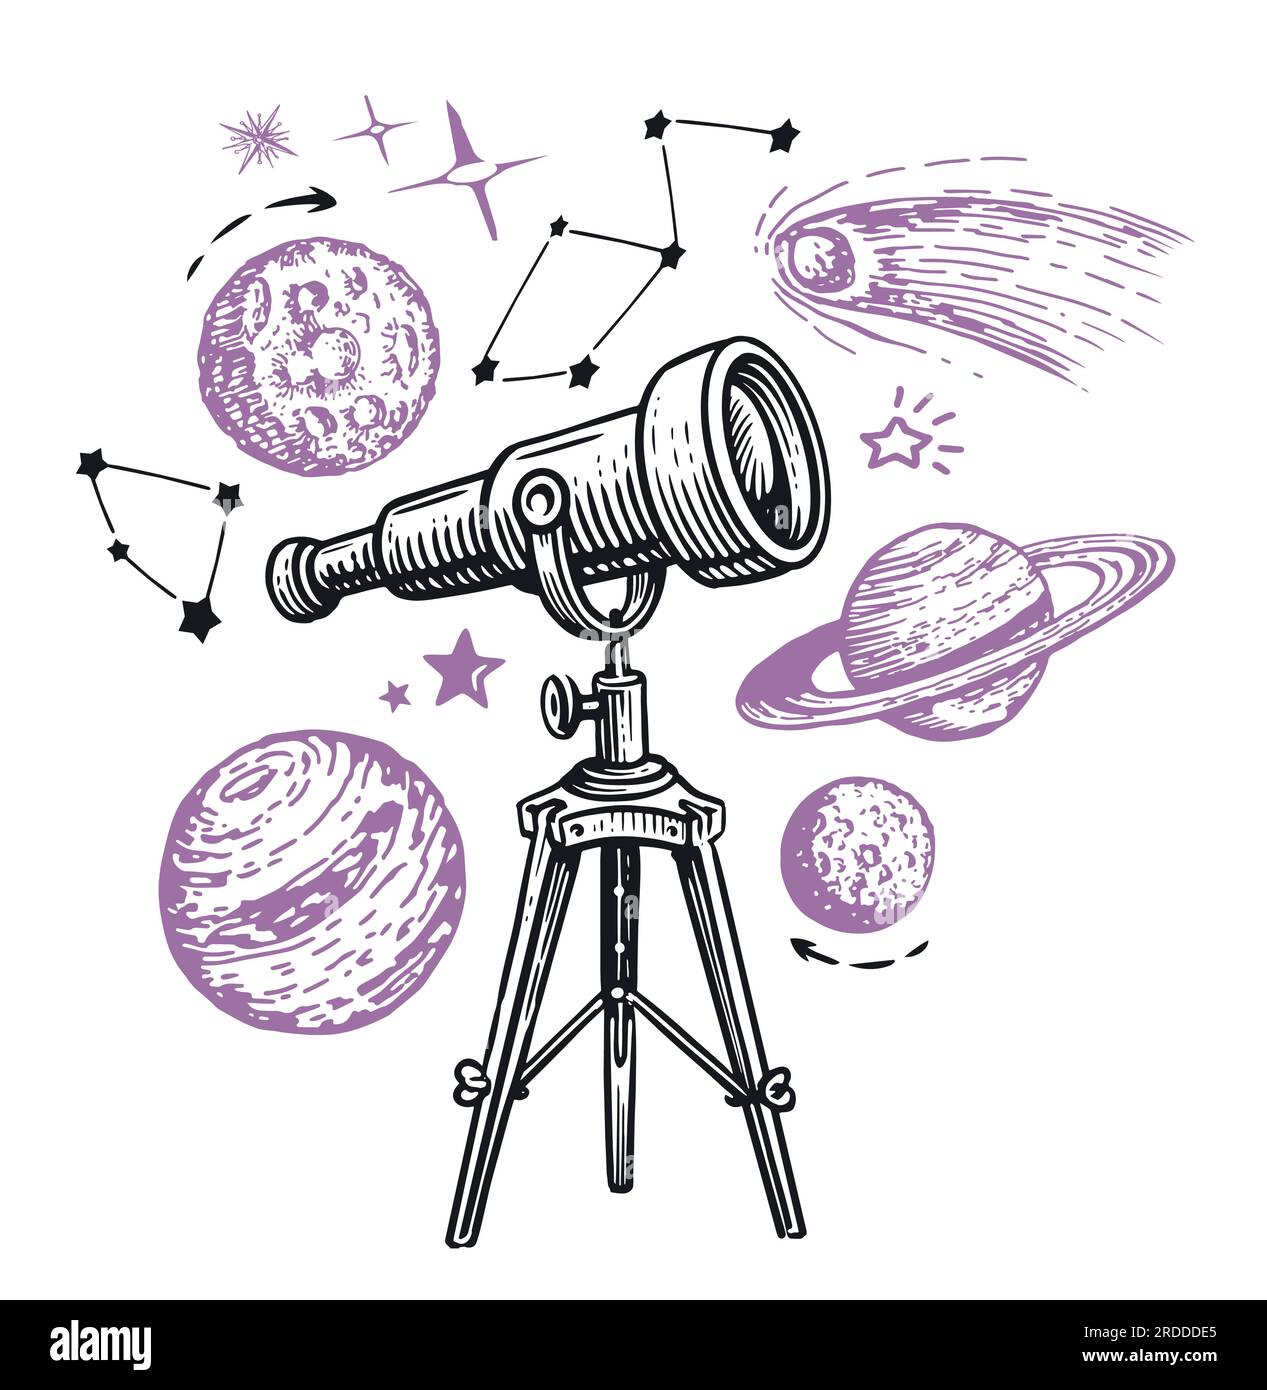 Télescope observant les étoiles et les planètes. Astronomie, concept d'exploration spatiale. Illustration vectorielle d'esquisse Illustration de Vecteur